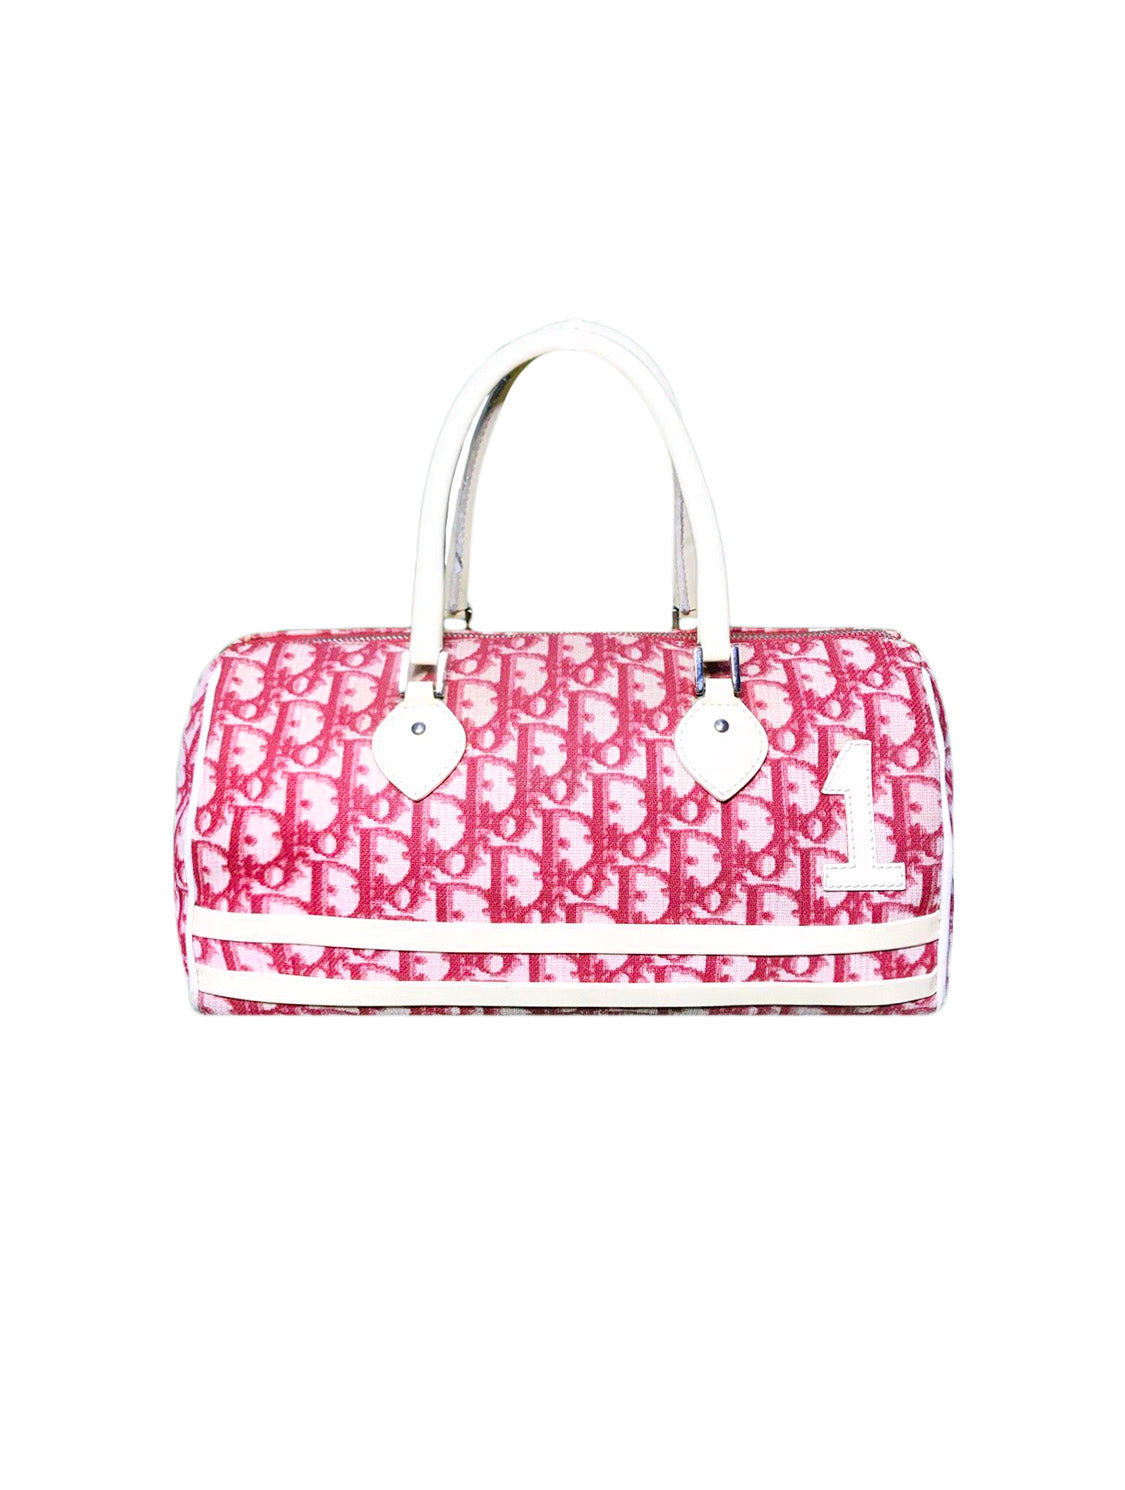 Christian Dior 2000s Dark Pink Trotter Handbag